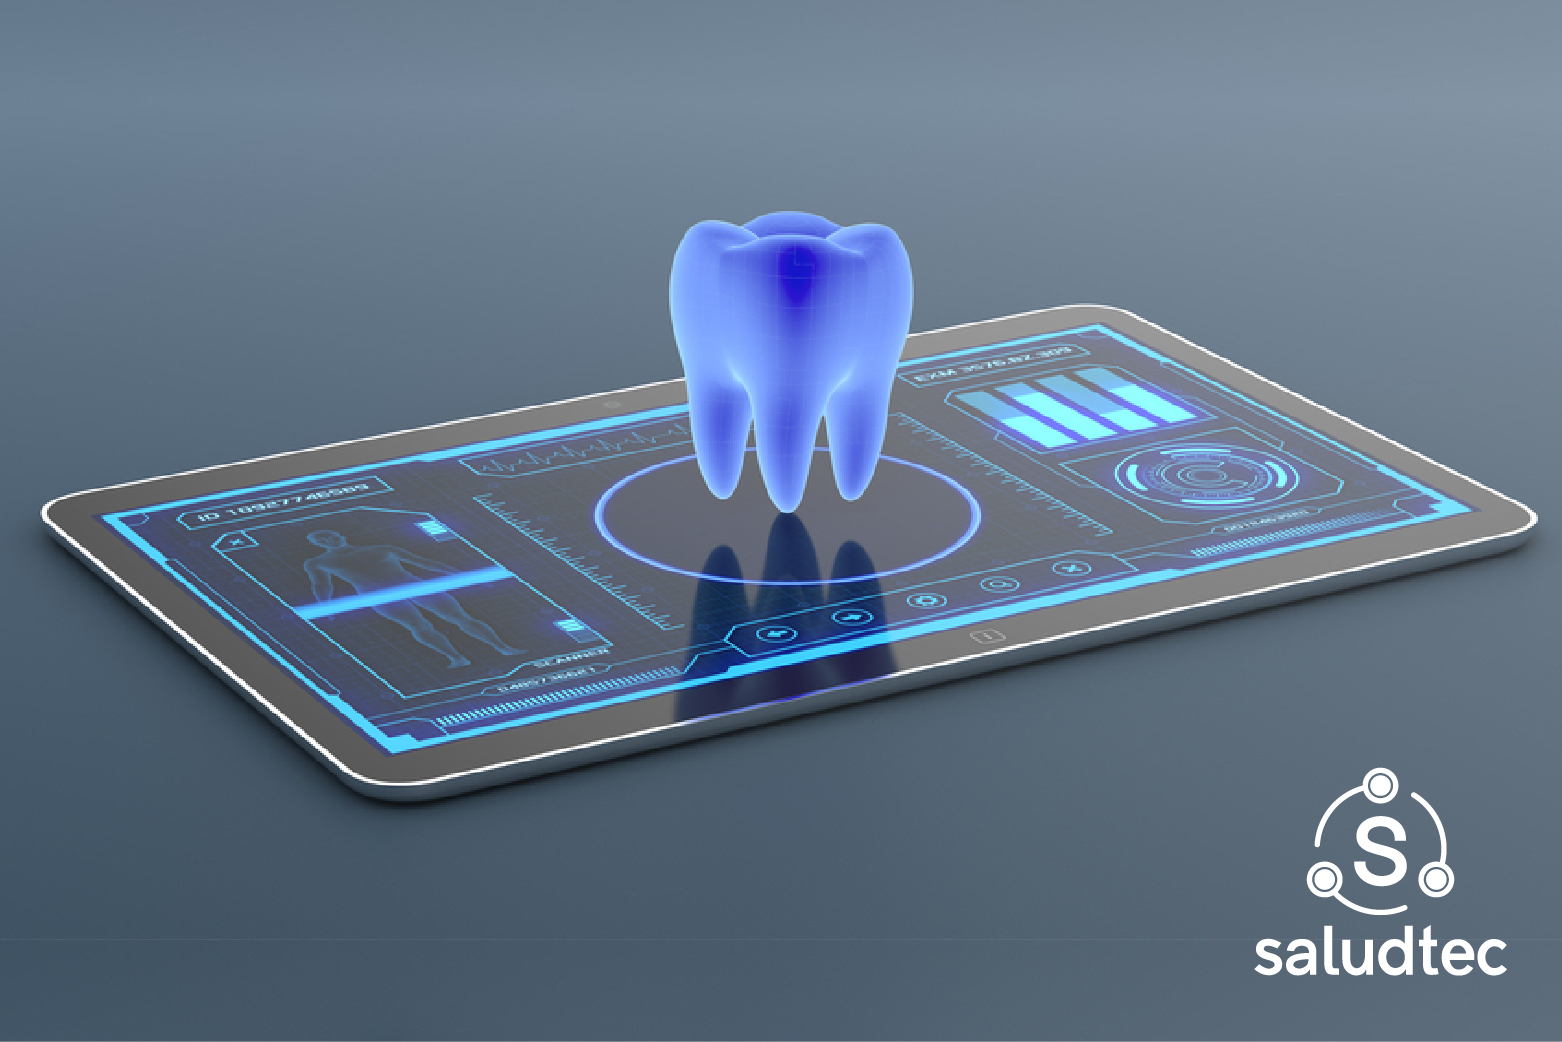 Beneficios de la odontología digital